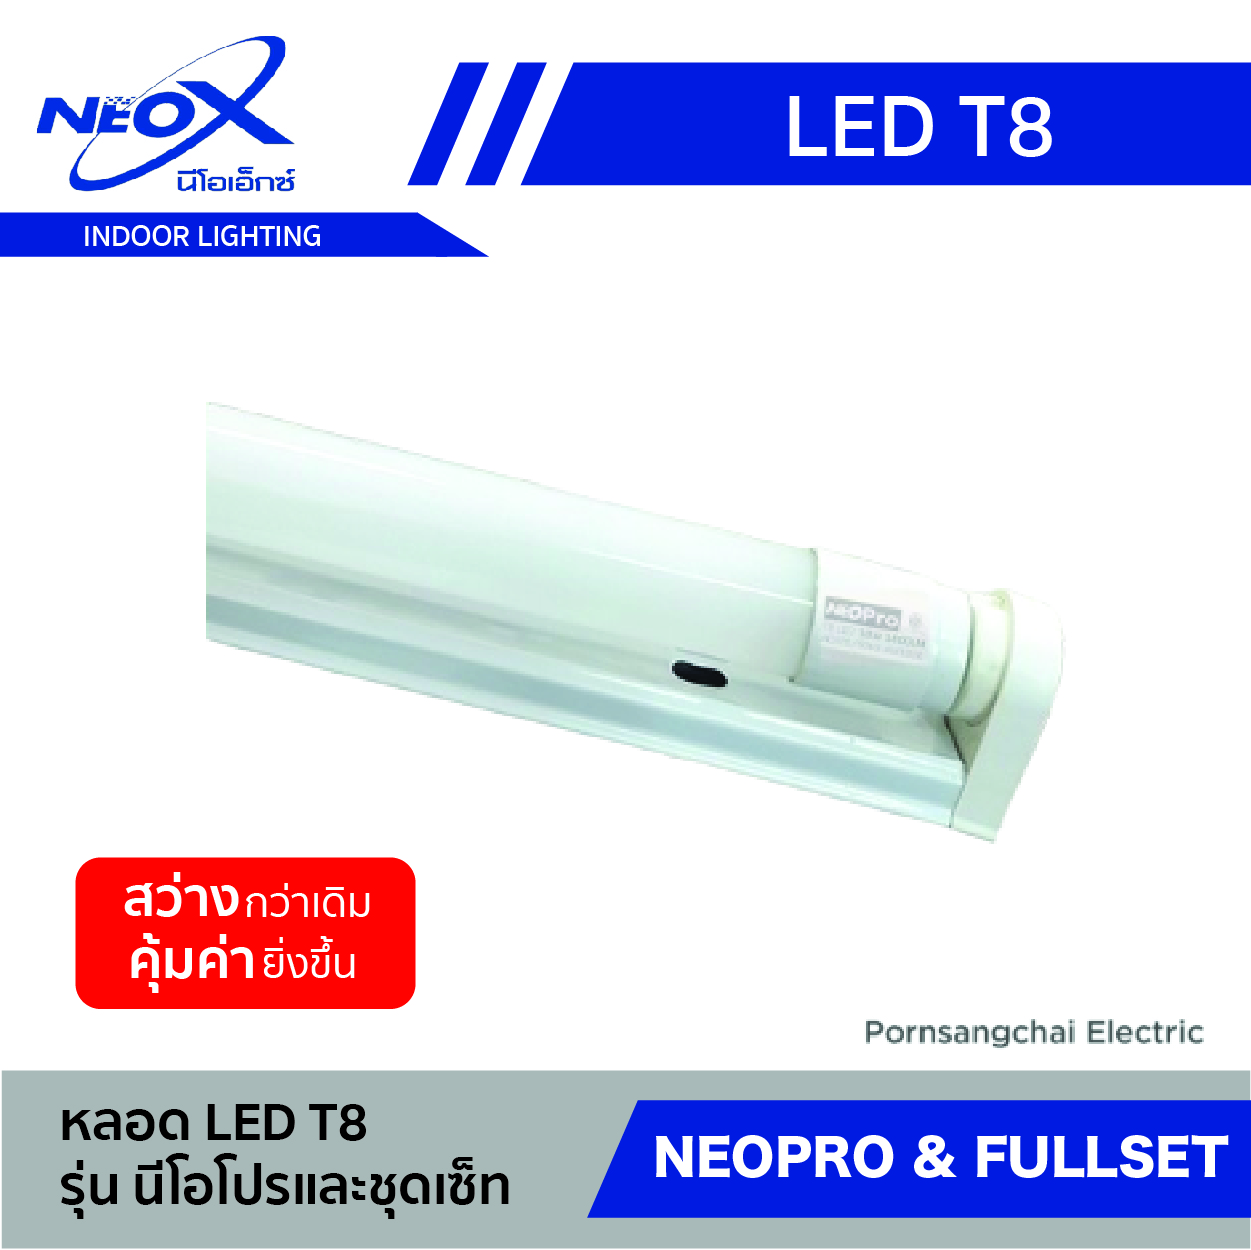 หลอดไฟ LED T8 NEOX รุ่น Neopro & Fullset